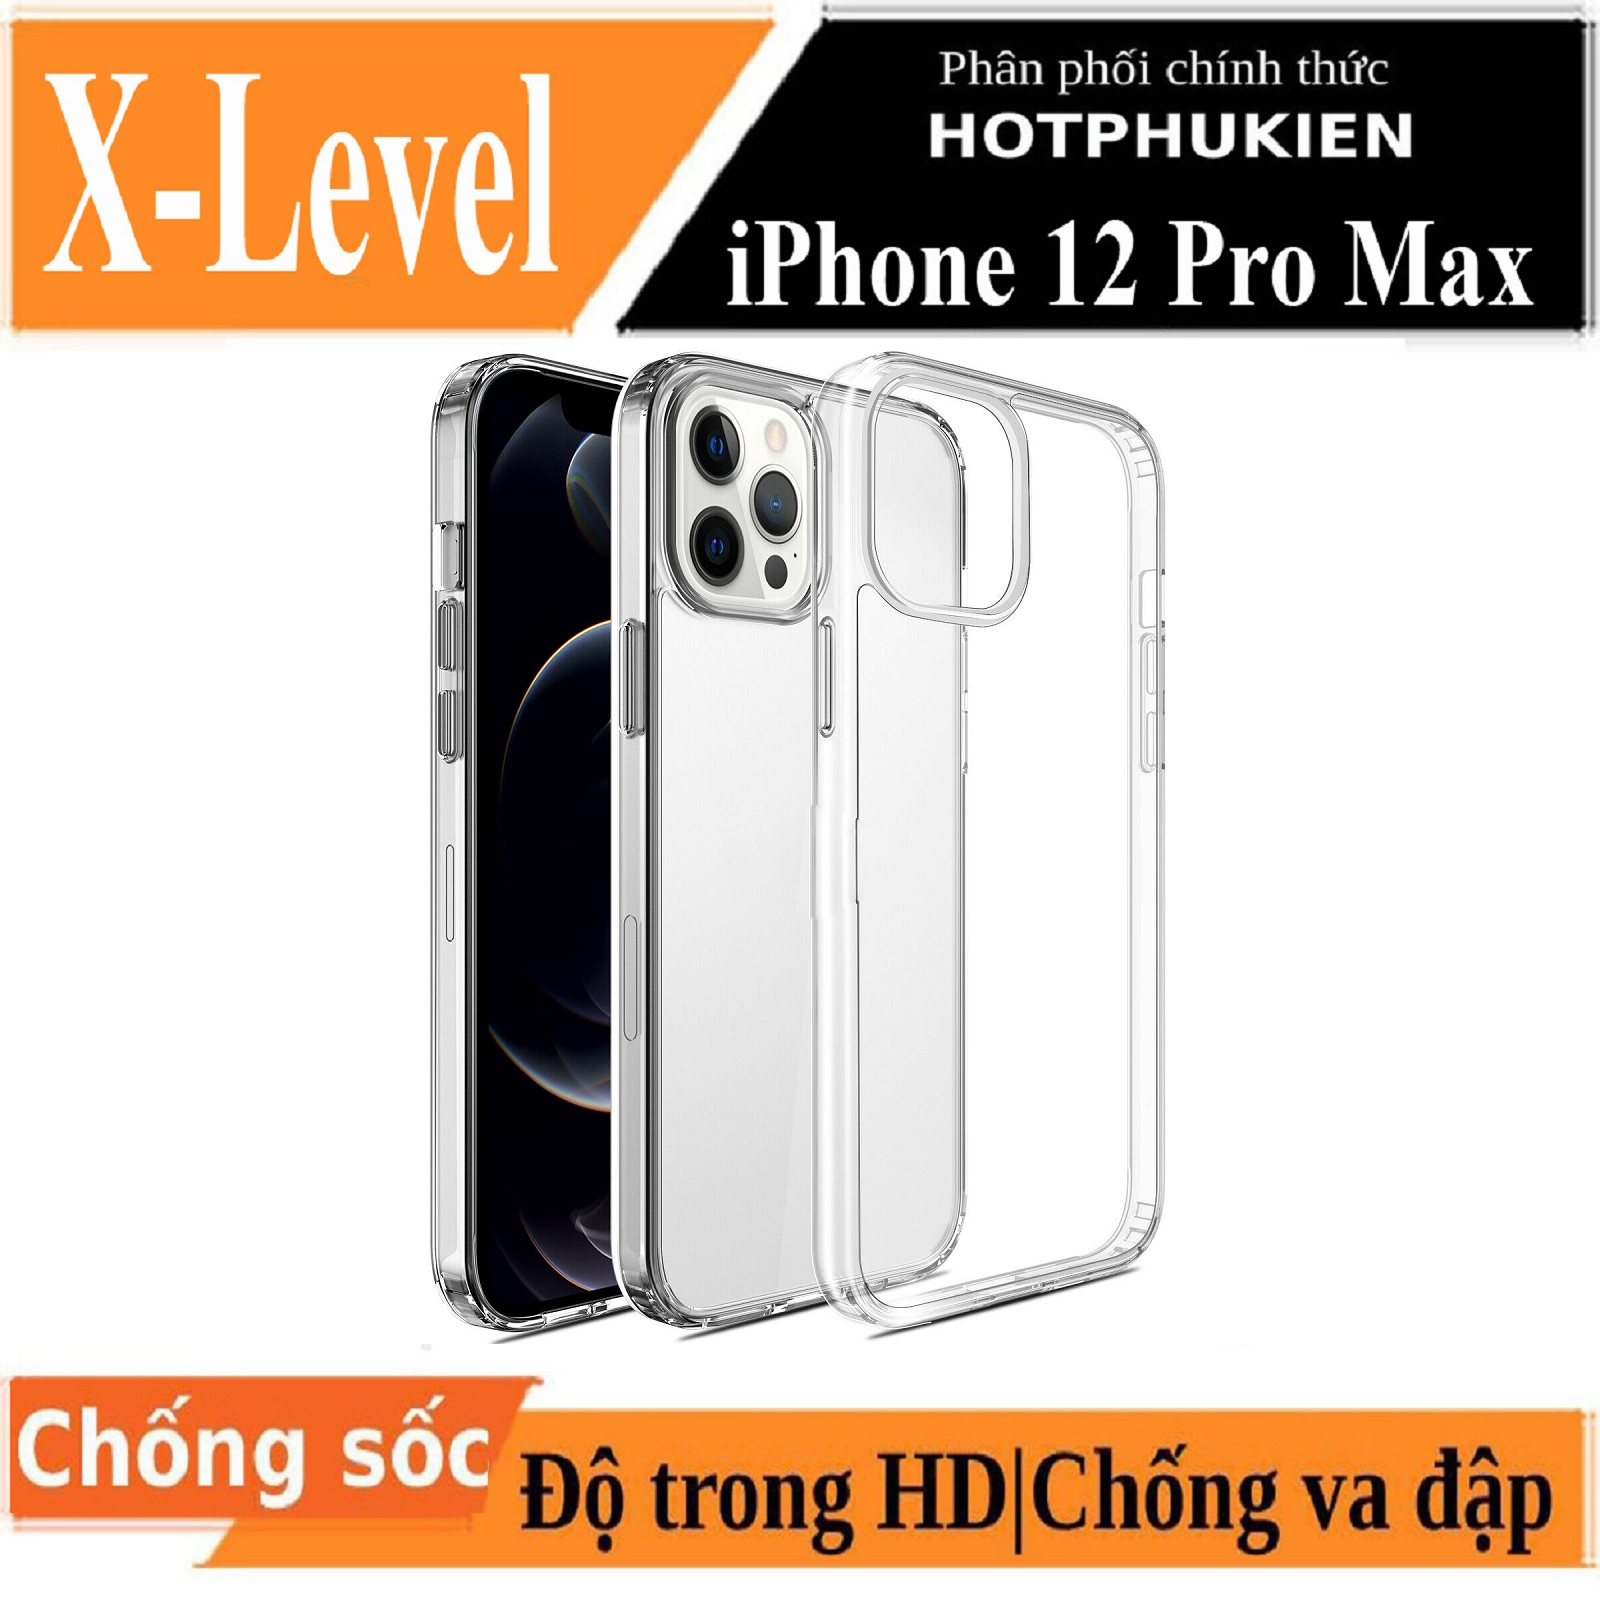 Ốp lưng chống sốc cho iPhone 12 / 12 Pro / 12 Pro Max mặt lưng trong suốt siêu mỏng 0.8mm hiệu X-Level Sparkling Series độ trong tuyệt đối chống trầy xước chống ố vàng tản nhiệt tốt  - Phân phối bởi Hotphukien